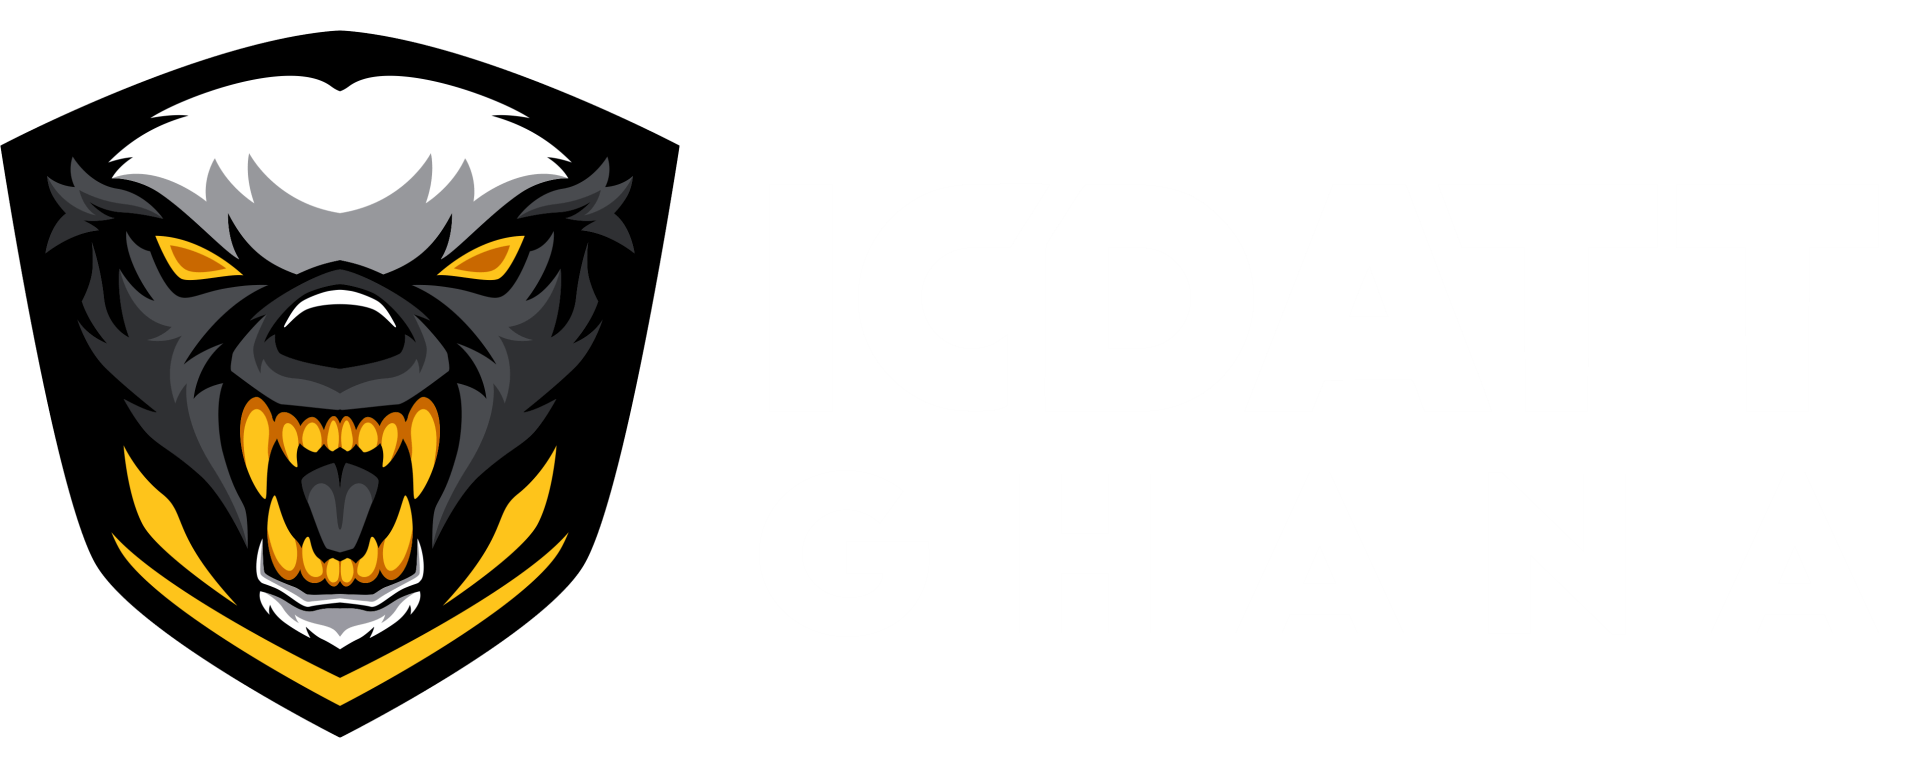 ICDATT Ghana